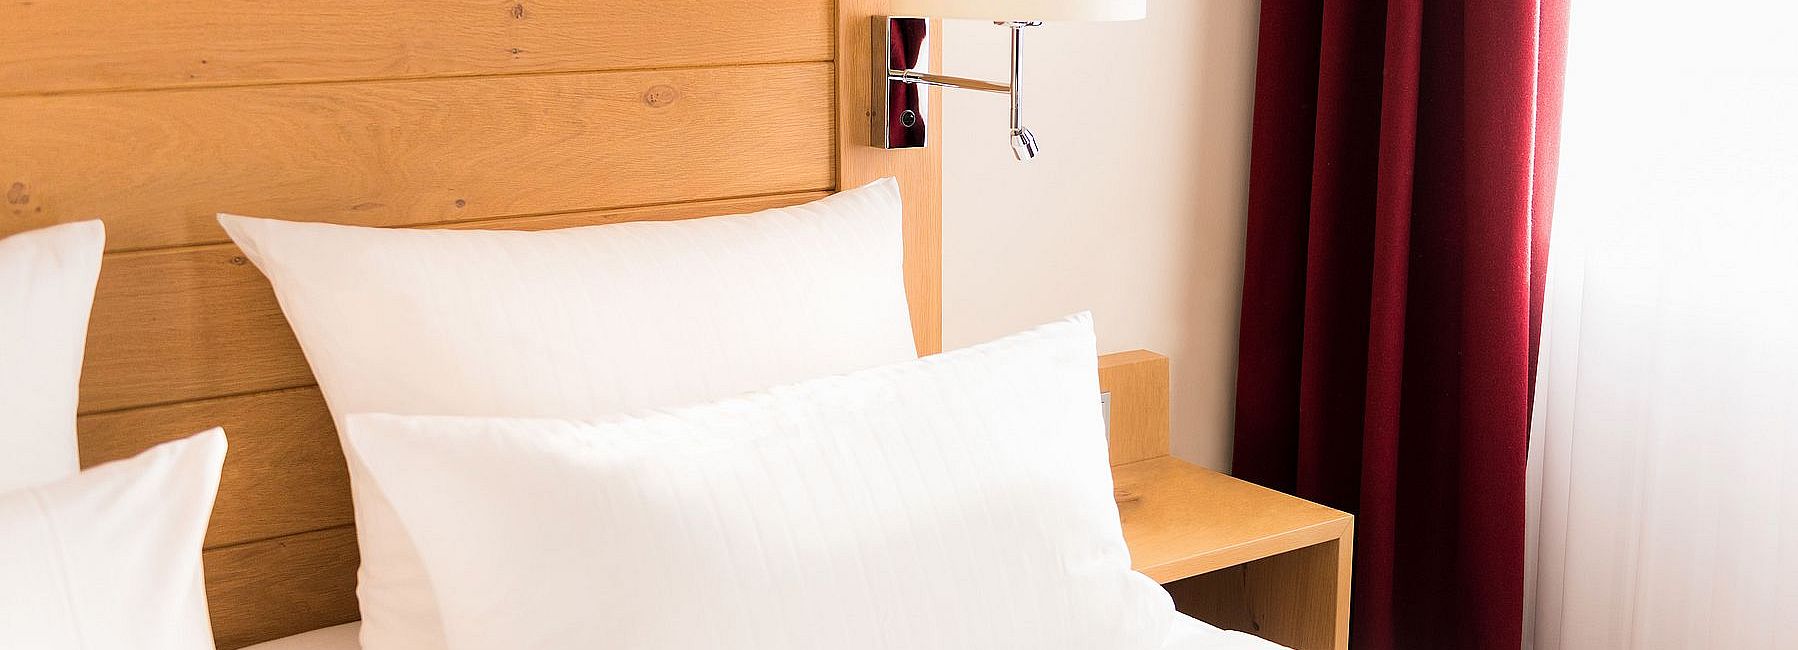 Doppelbett in einem Hotelzimmer mit hölzernem Kopfteil und roten Vorhängen